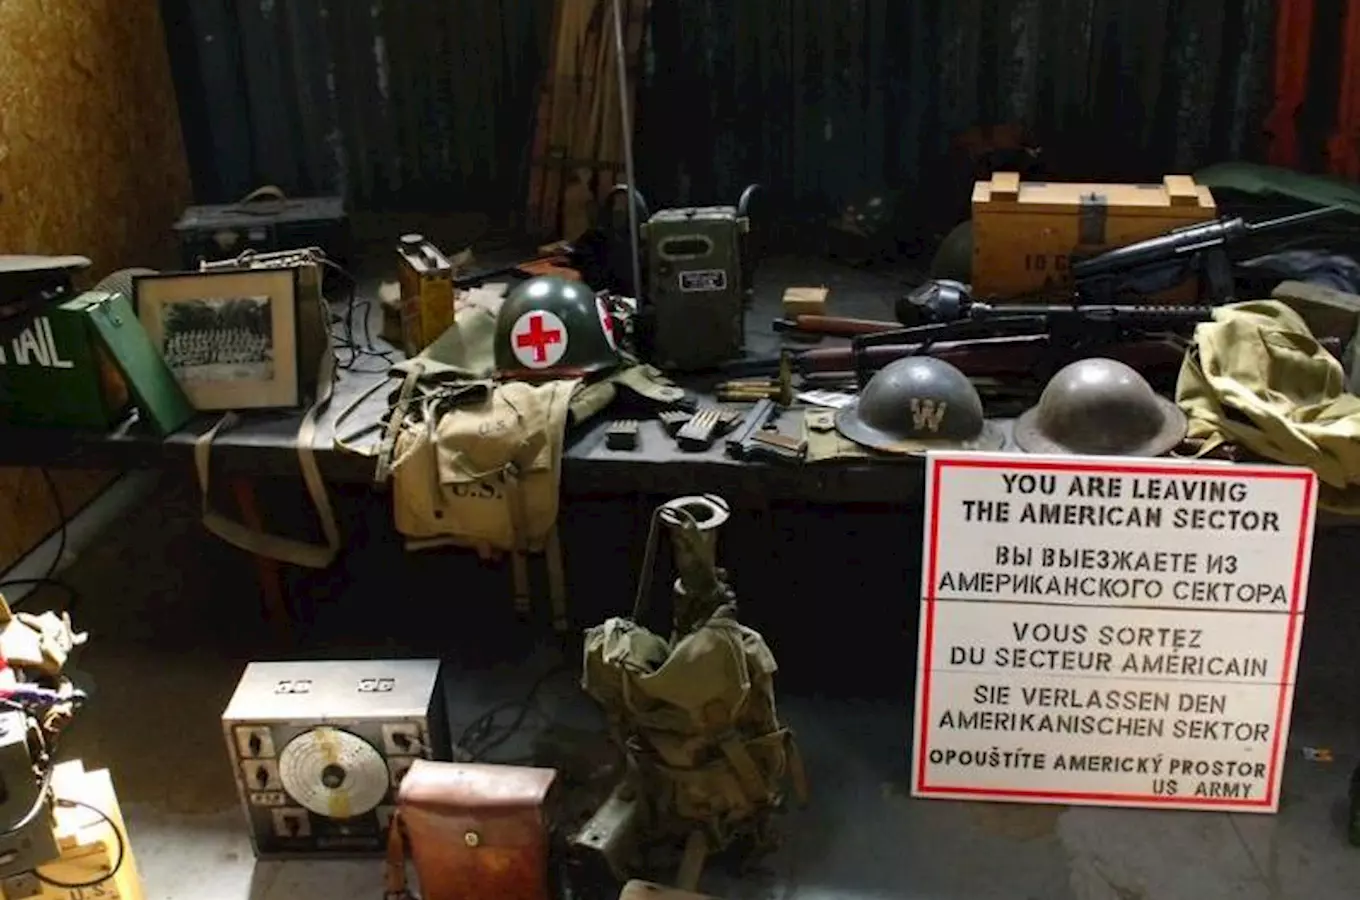 Army muzeum Zdice